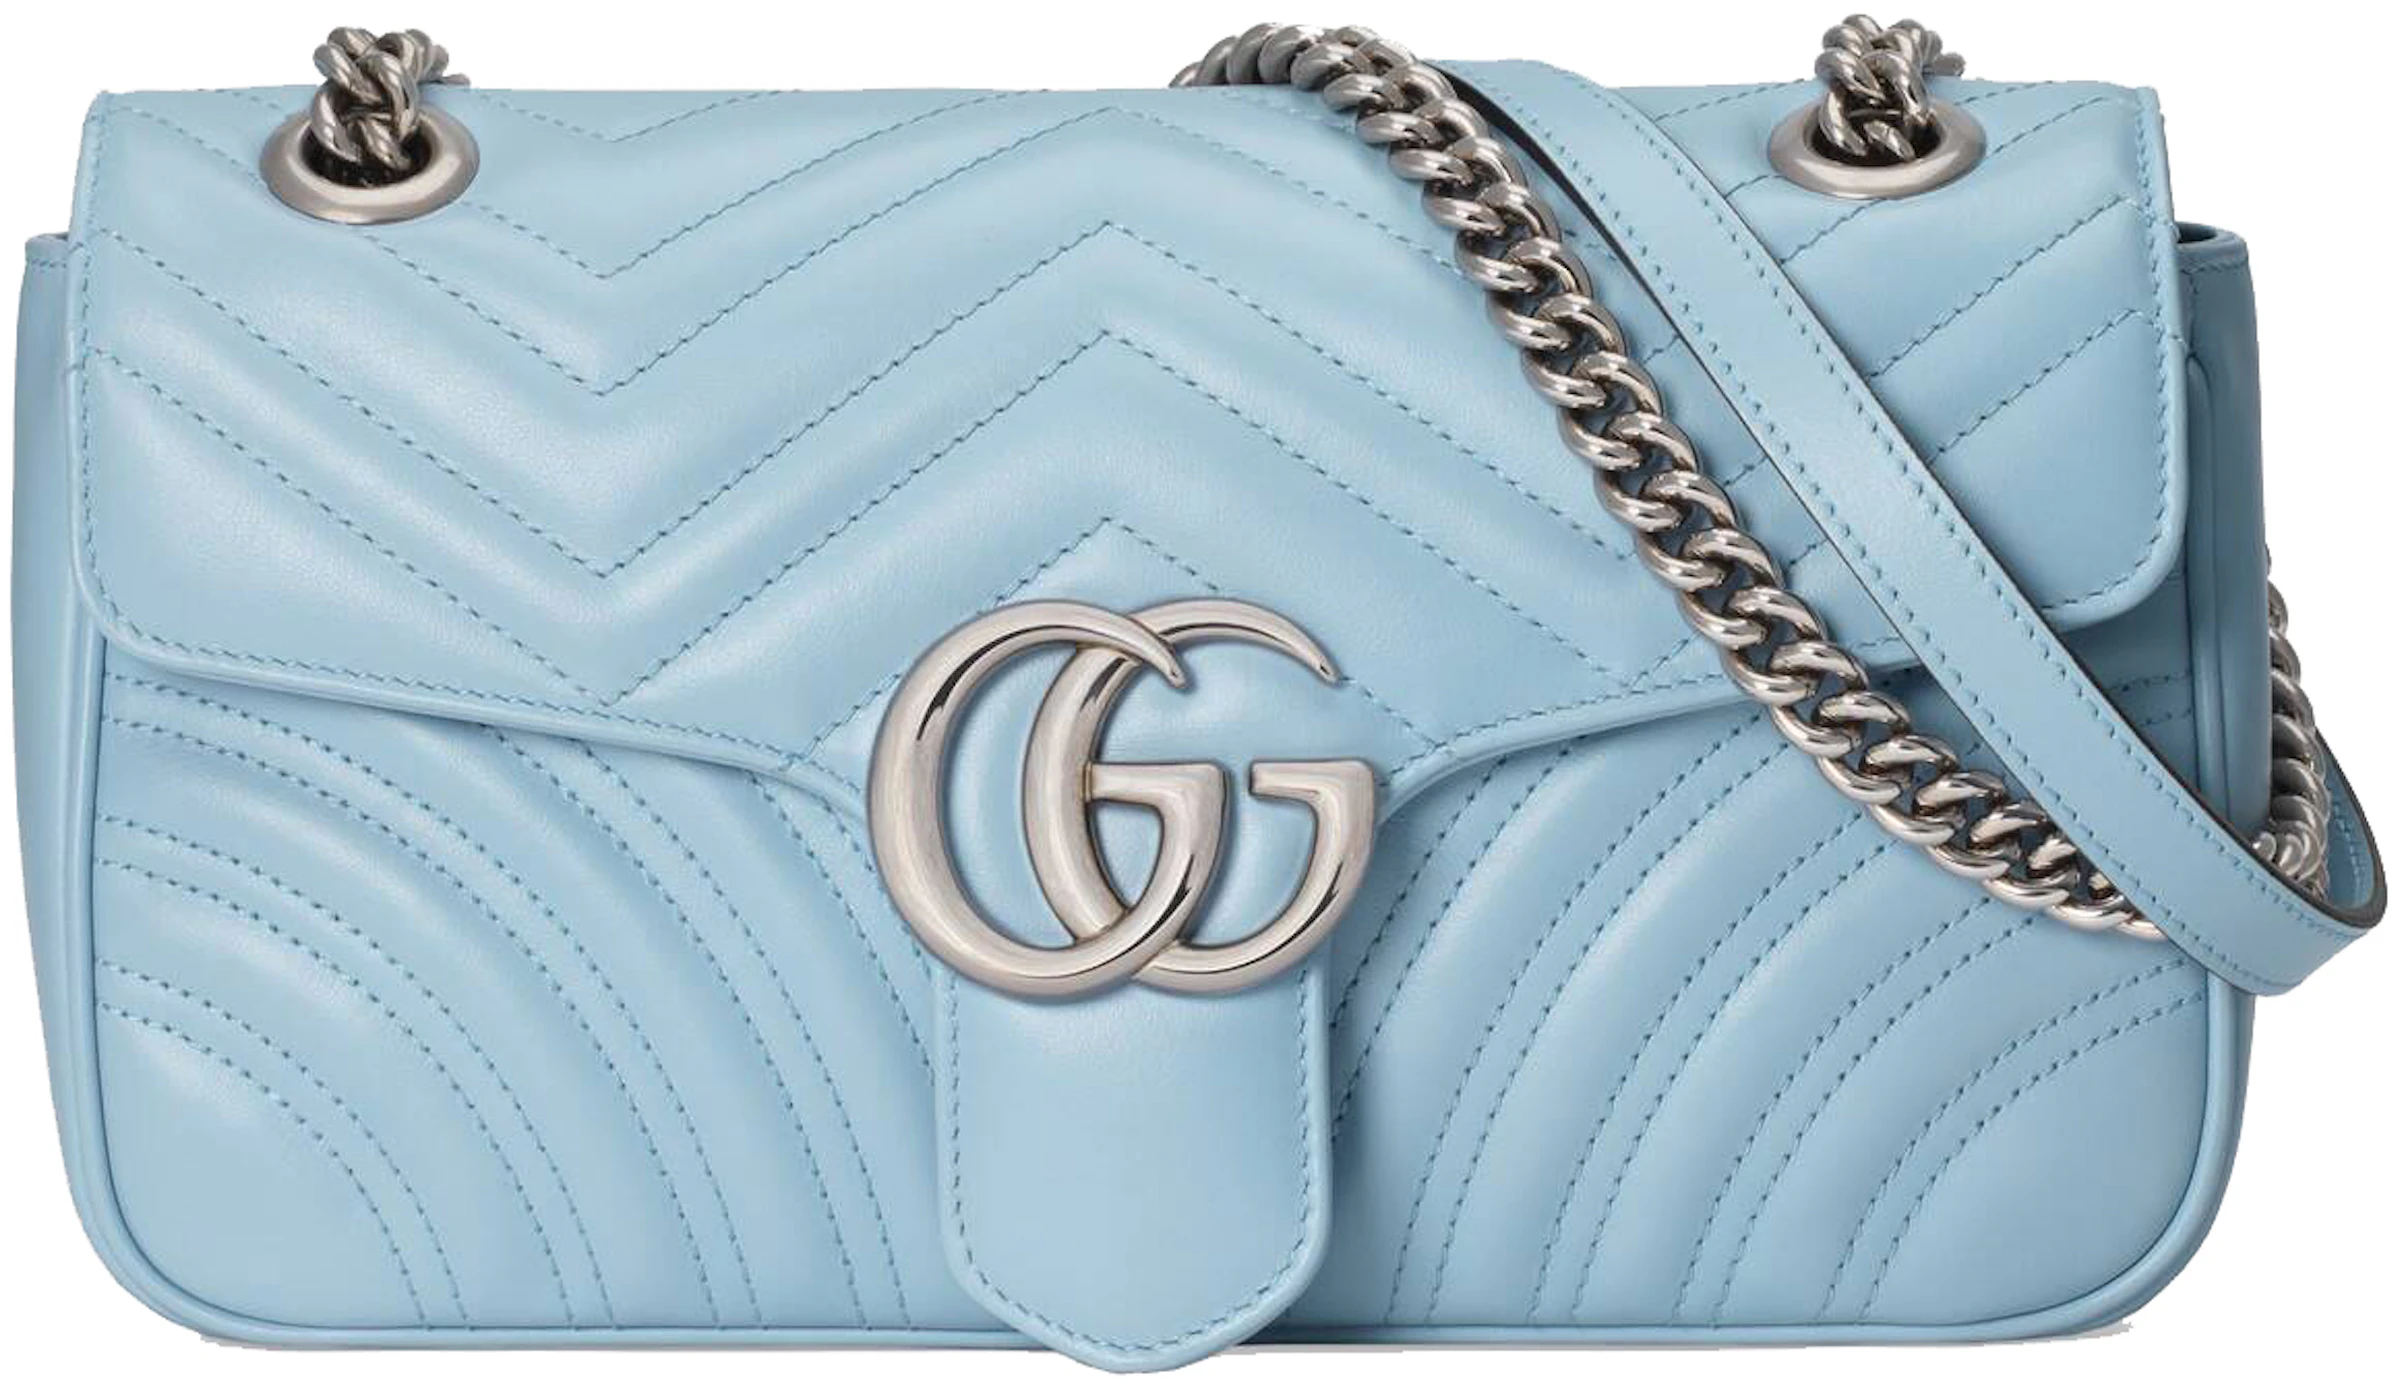 Buy Gucci Accessories - Color Blue - StockX